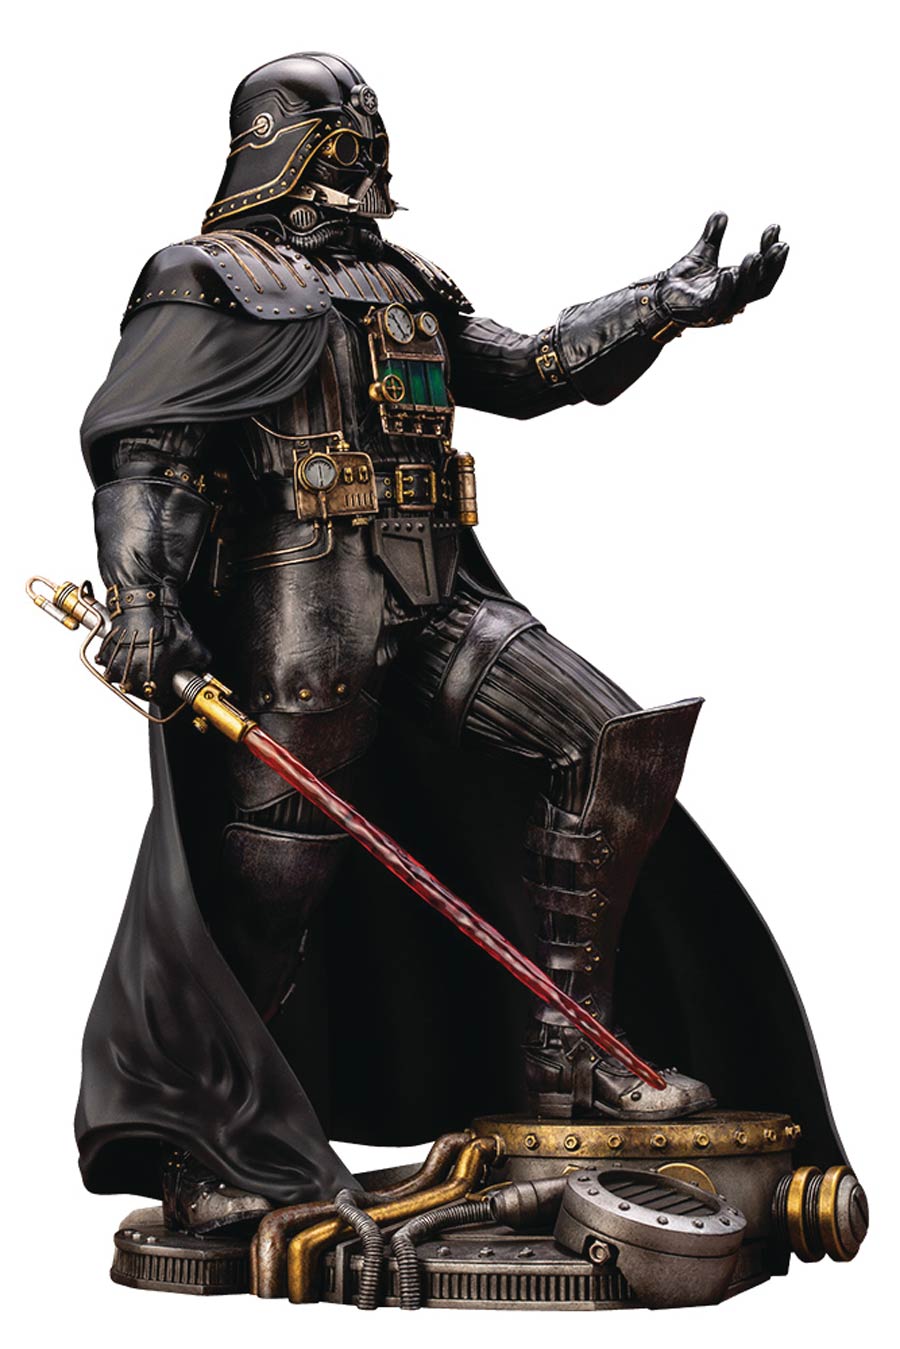 Star Wars Empire Strikes Back Darth Vader Industrial Empire Artist Series ARTFX Statue